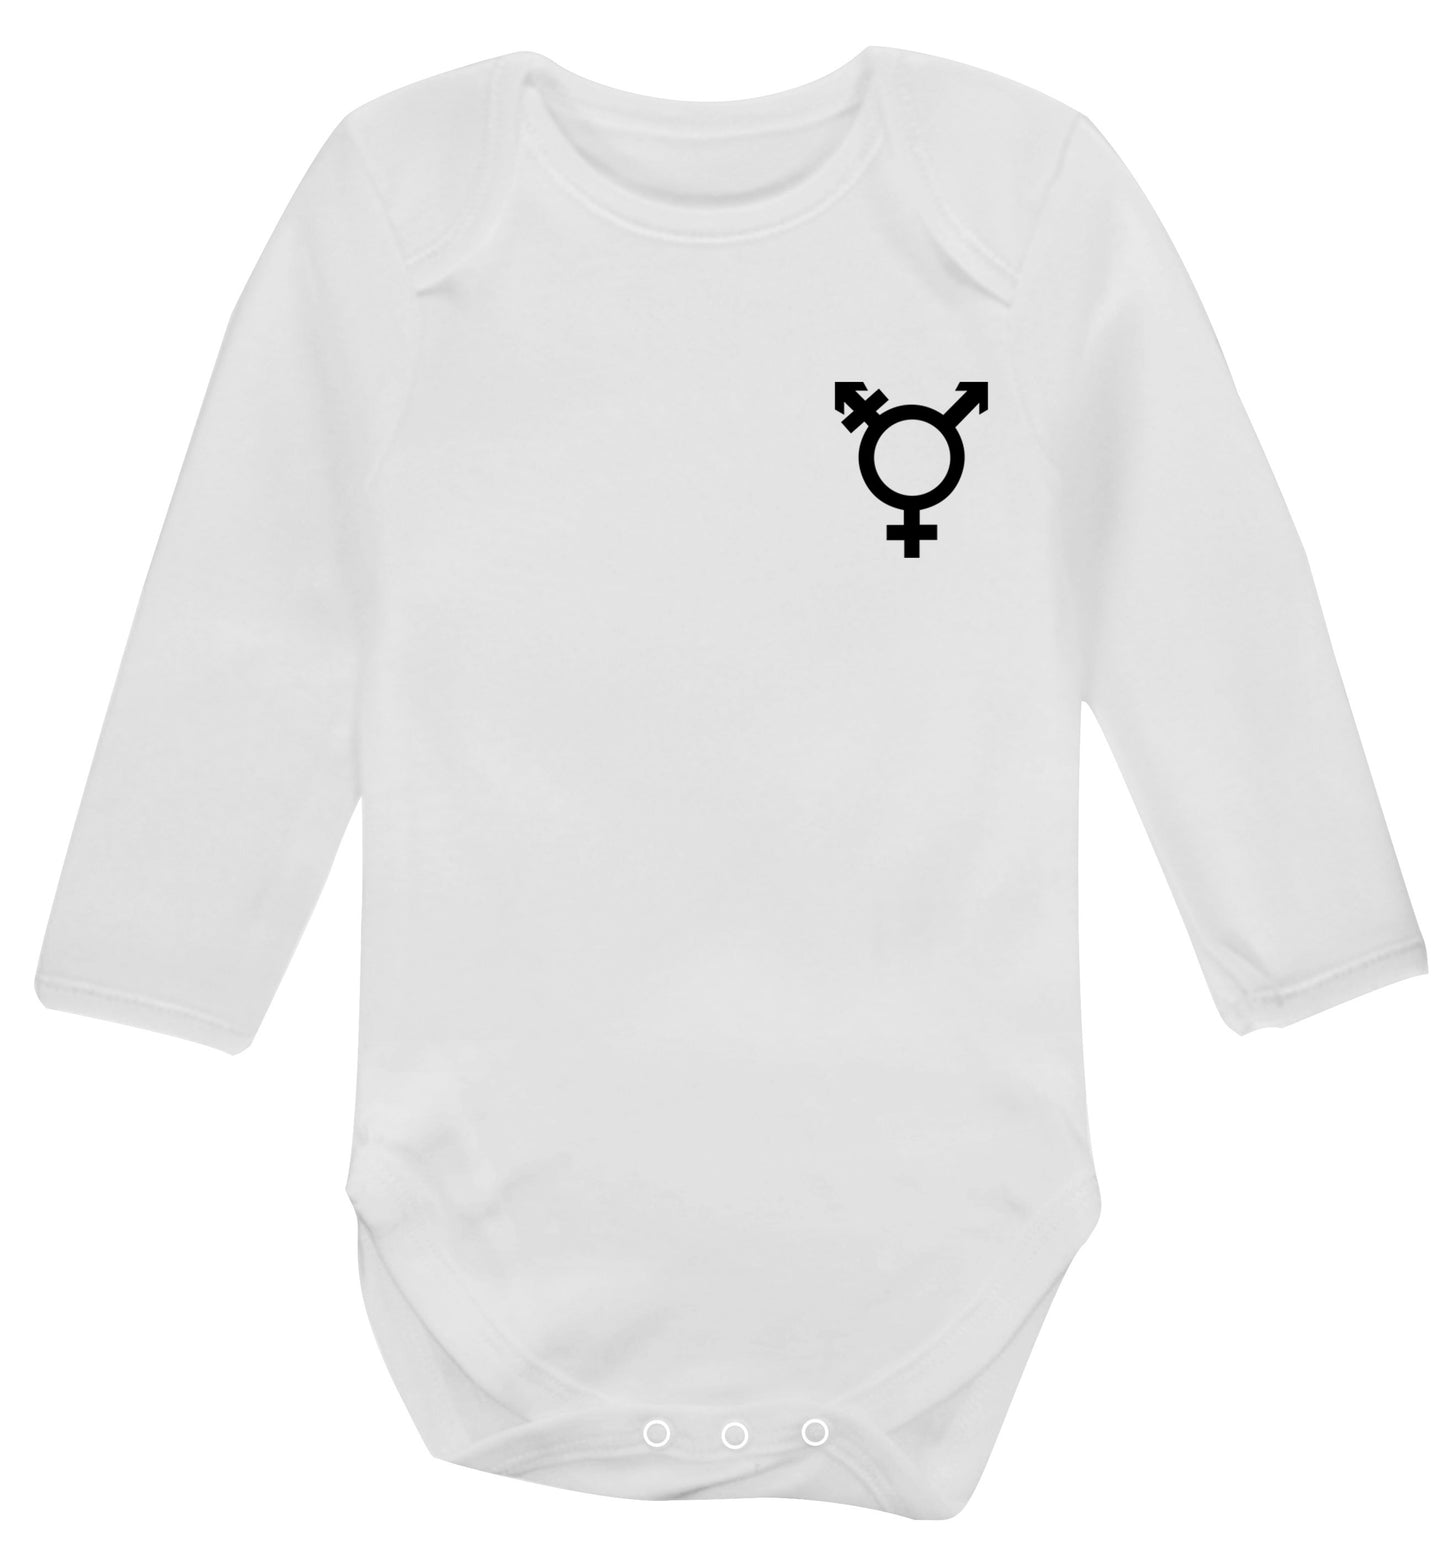 Trans gender symbol pocket Baby Vest long sleeved white 6-12 months